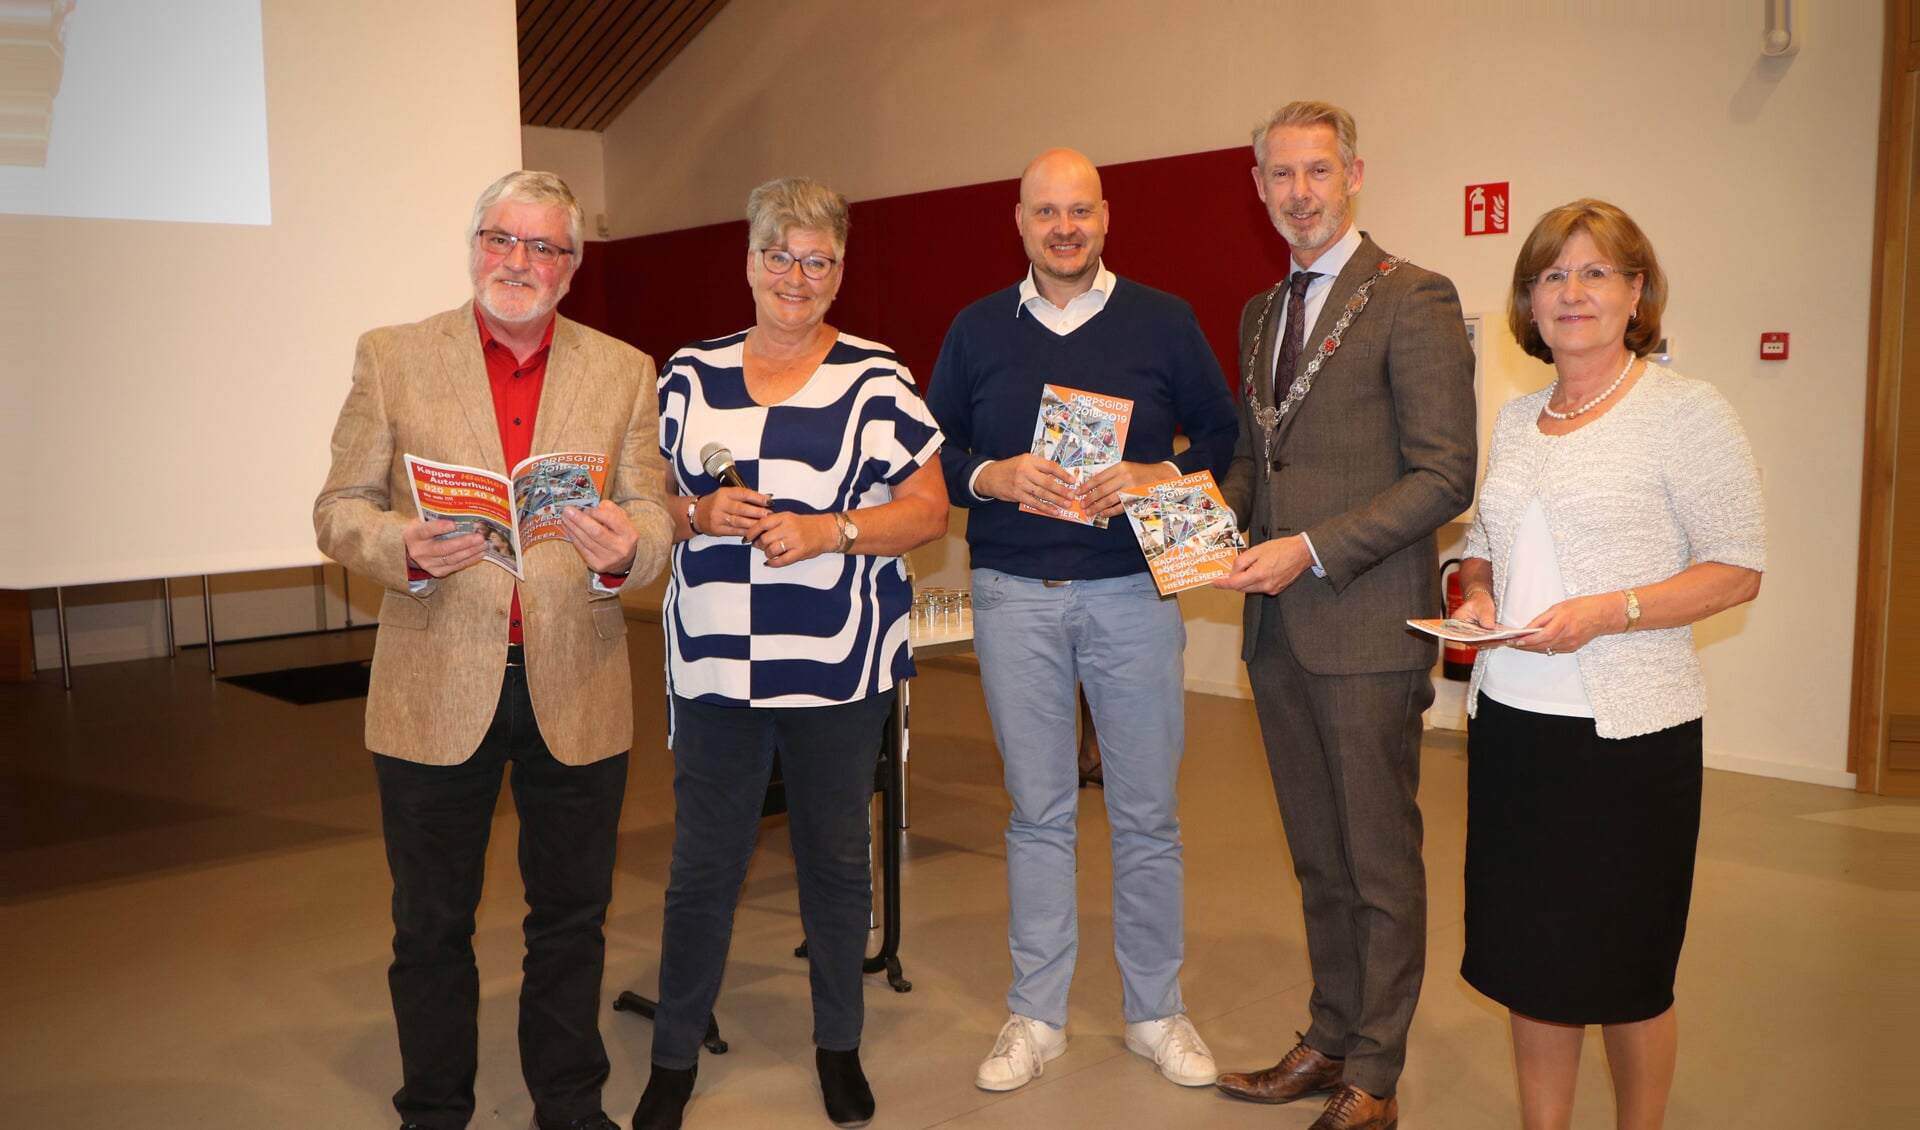 Burgemeester Hoes en de prijswinnaars van de fotowedstrijd ontvangen de eerste Dorpsgids editie 2018-2019